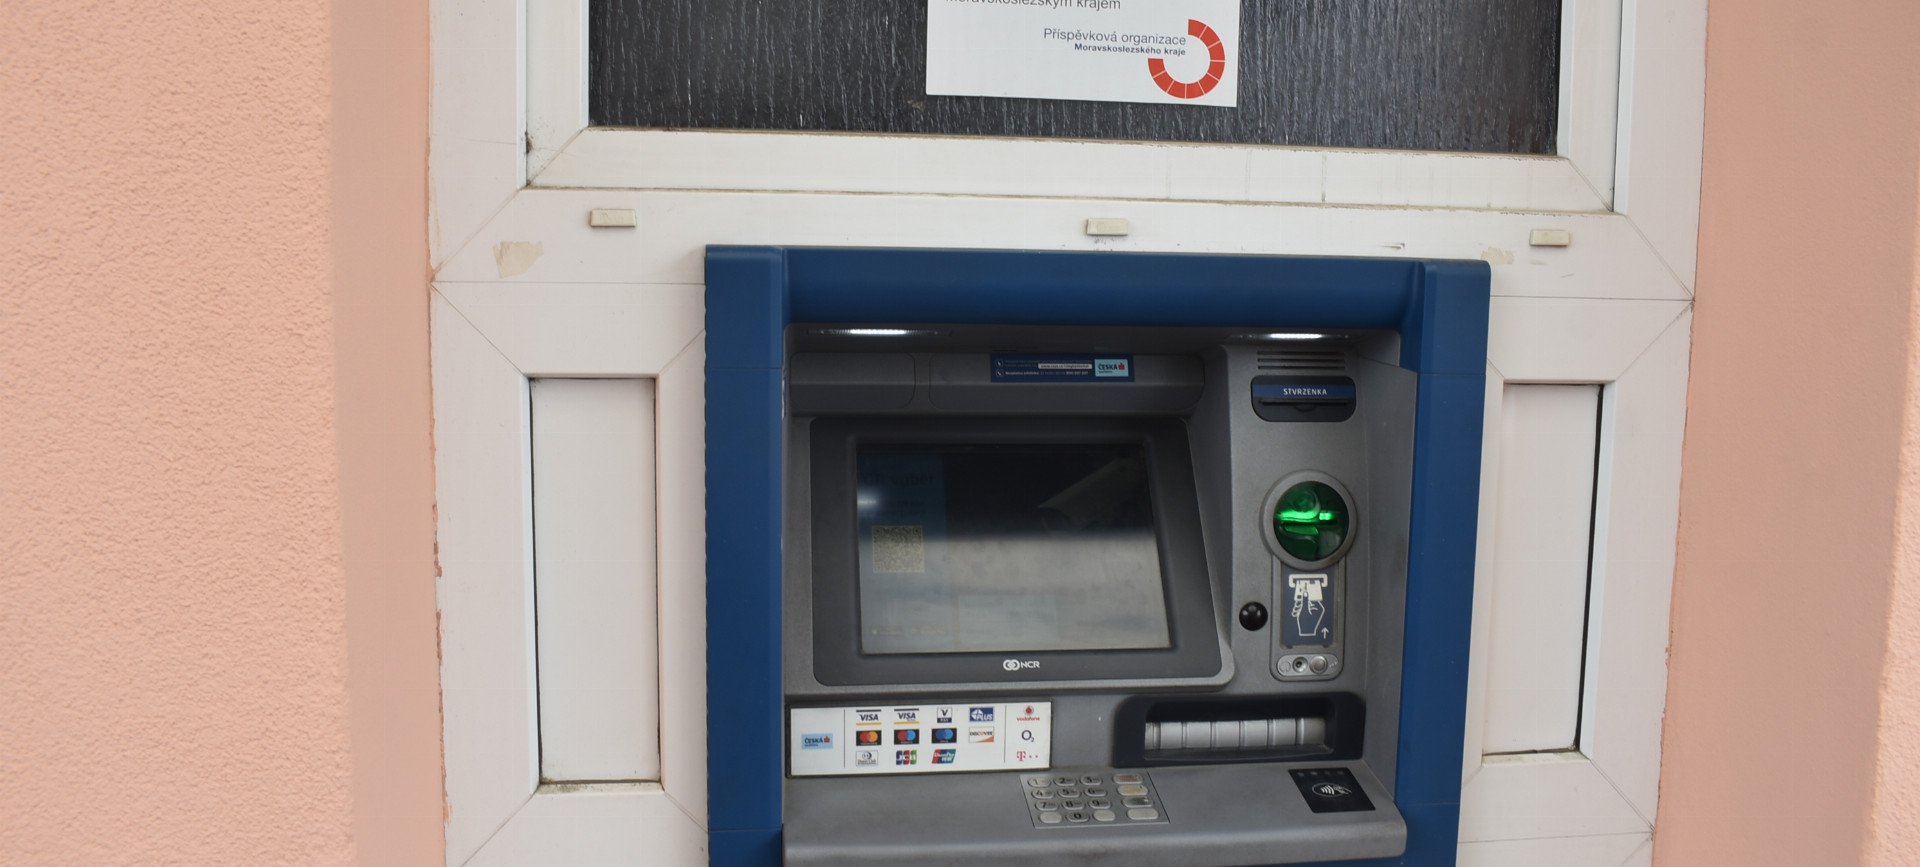 Bankomat ve vrátnici čeká výměna, bude mimo provoz